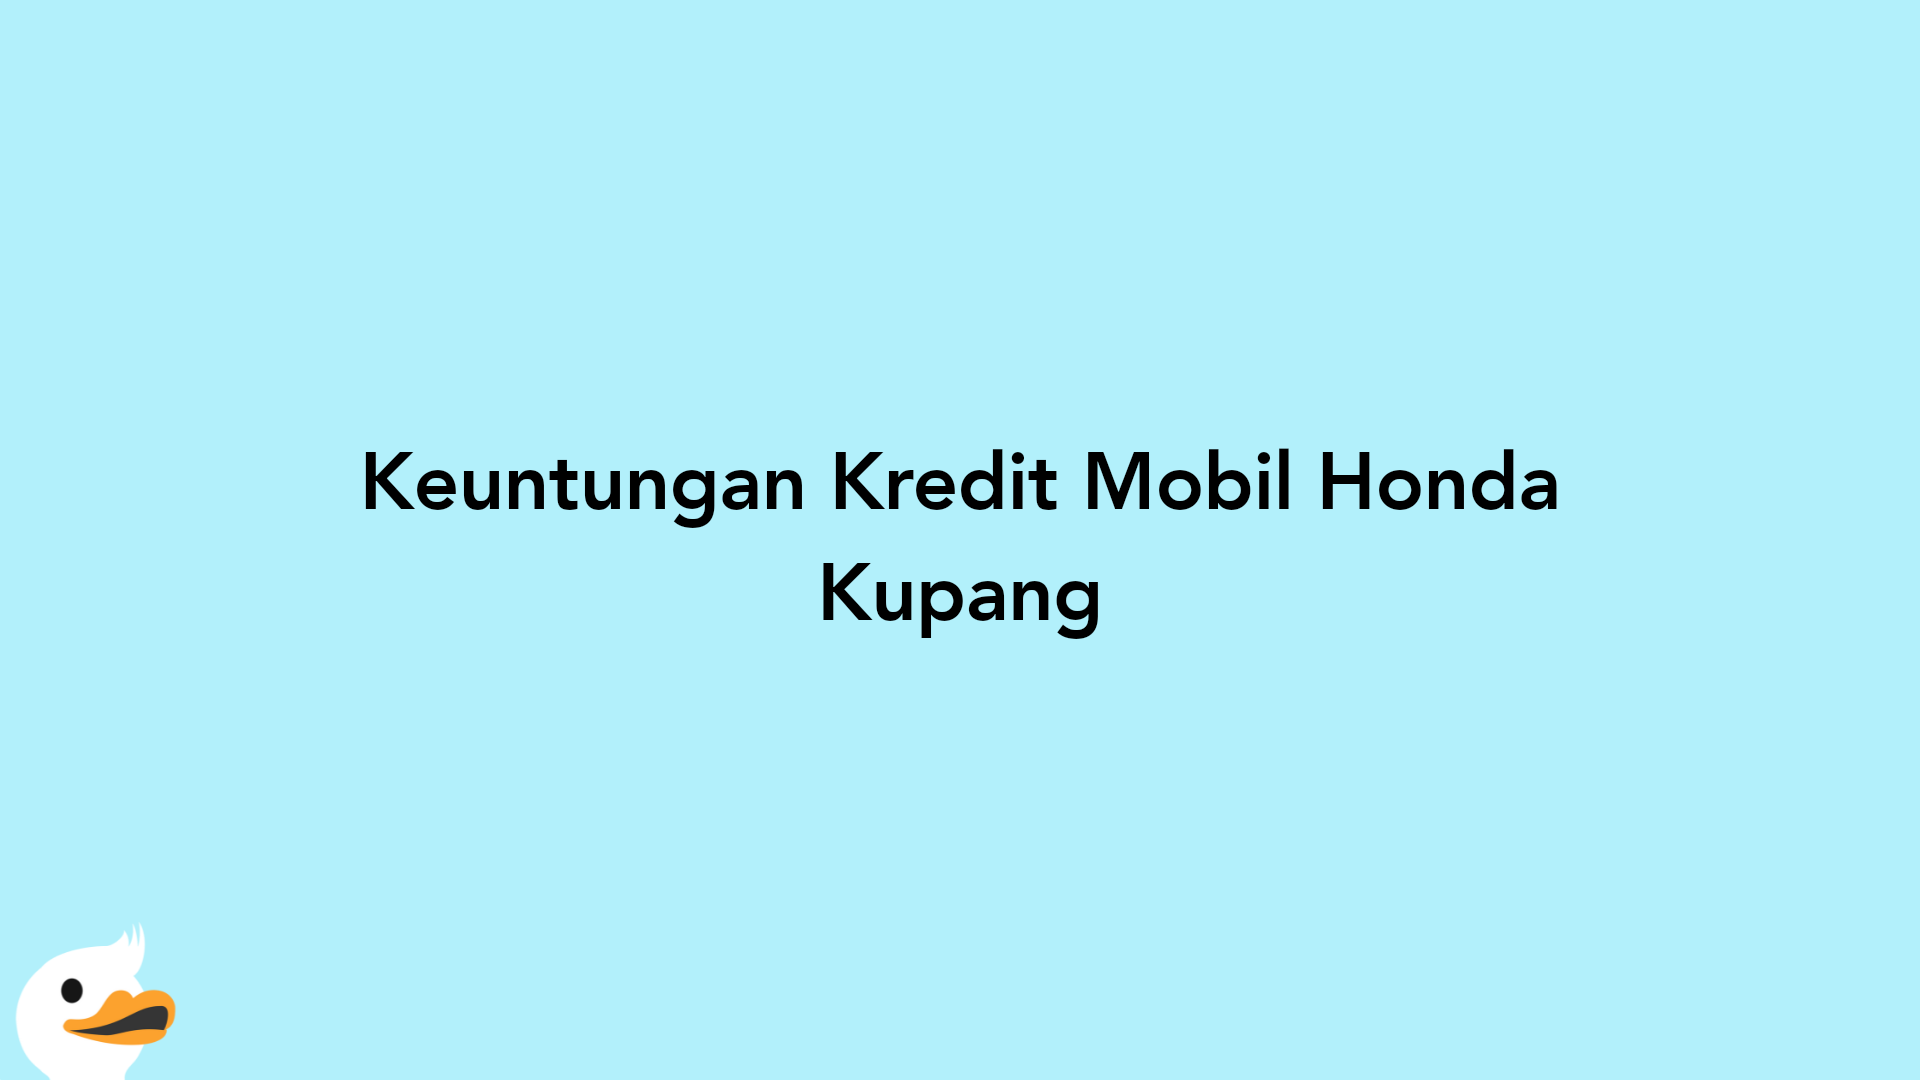 Keuntungan Kredit Mobil Honda Kupang